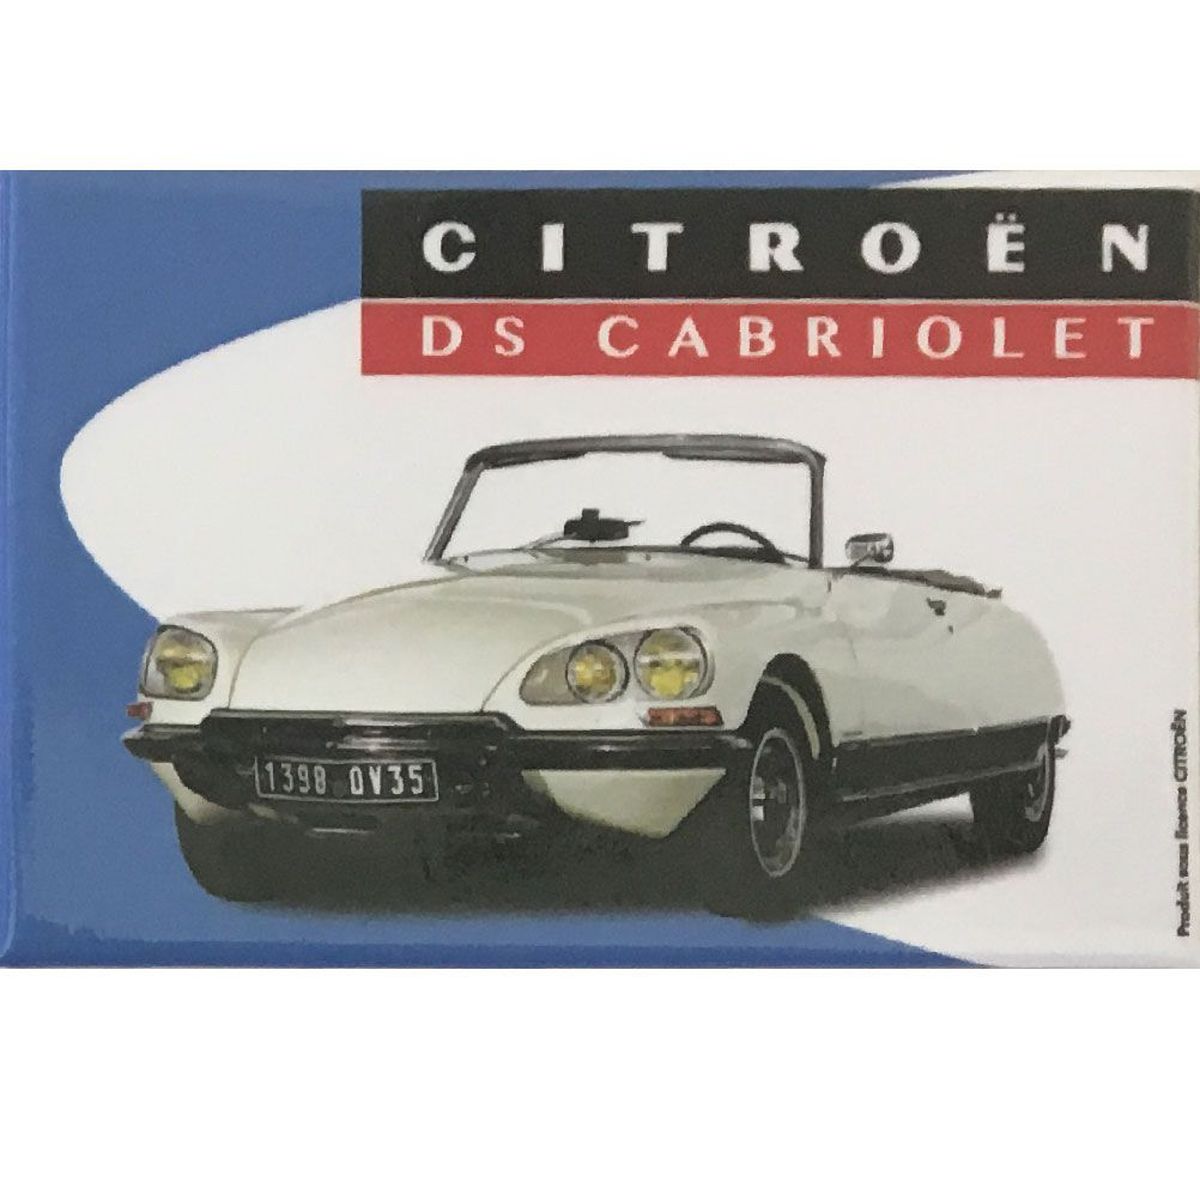 Magnet Citron DS Cabriolet - 7.9 x 5.4 cm